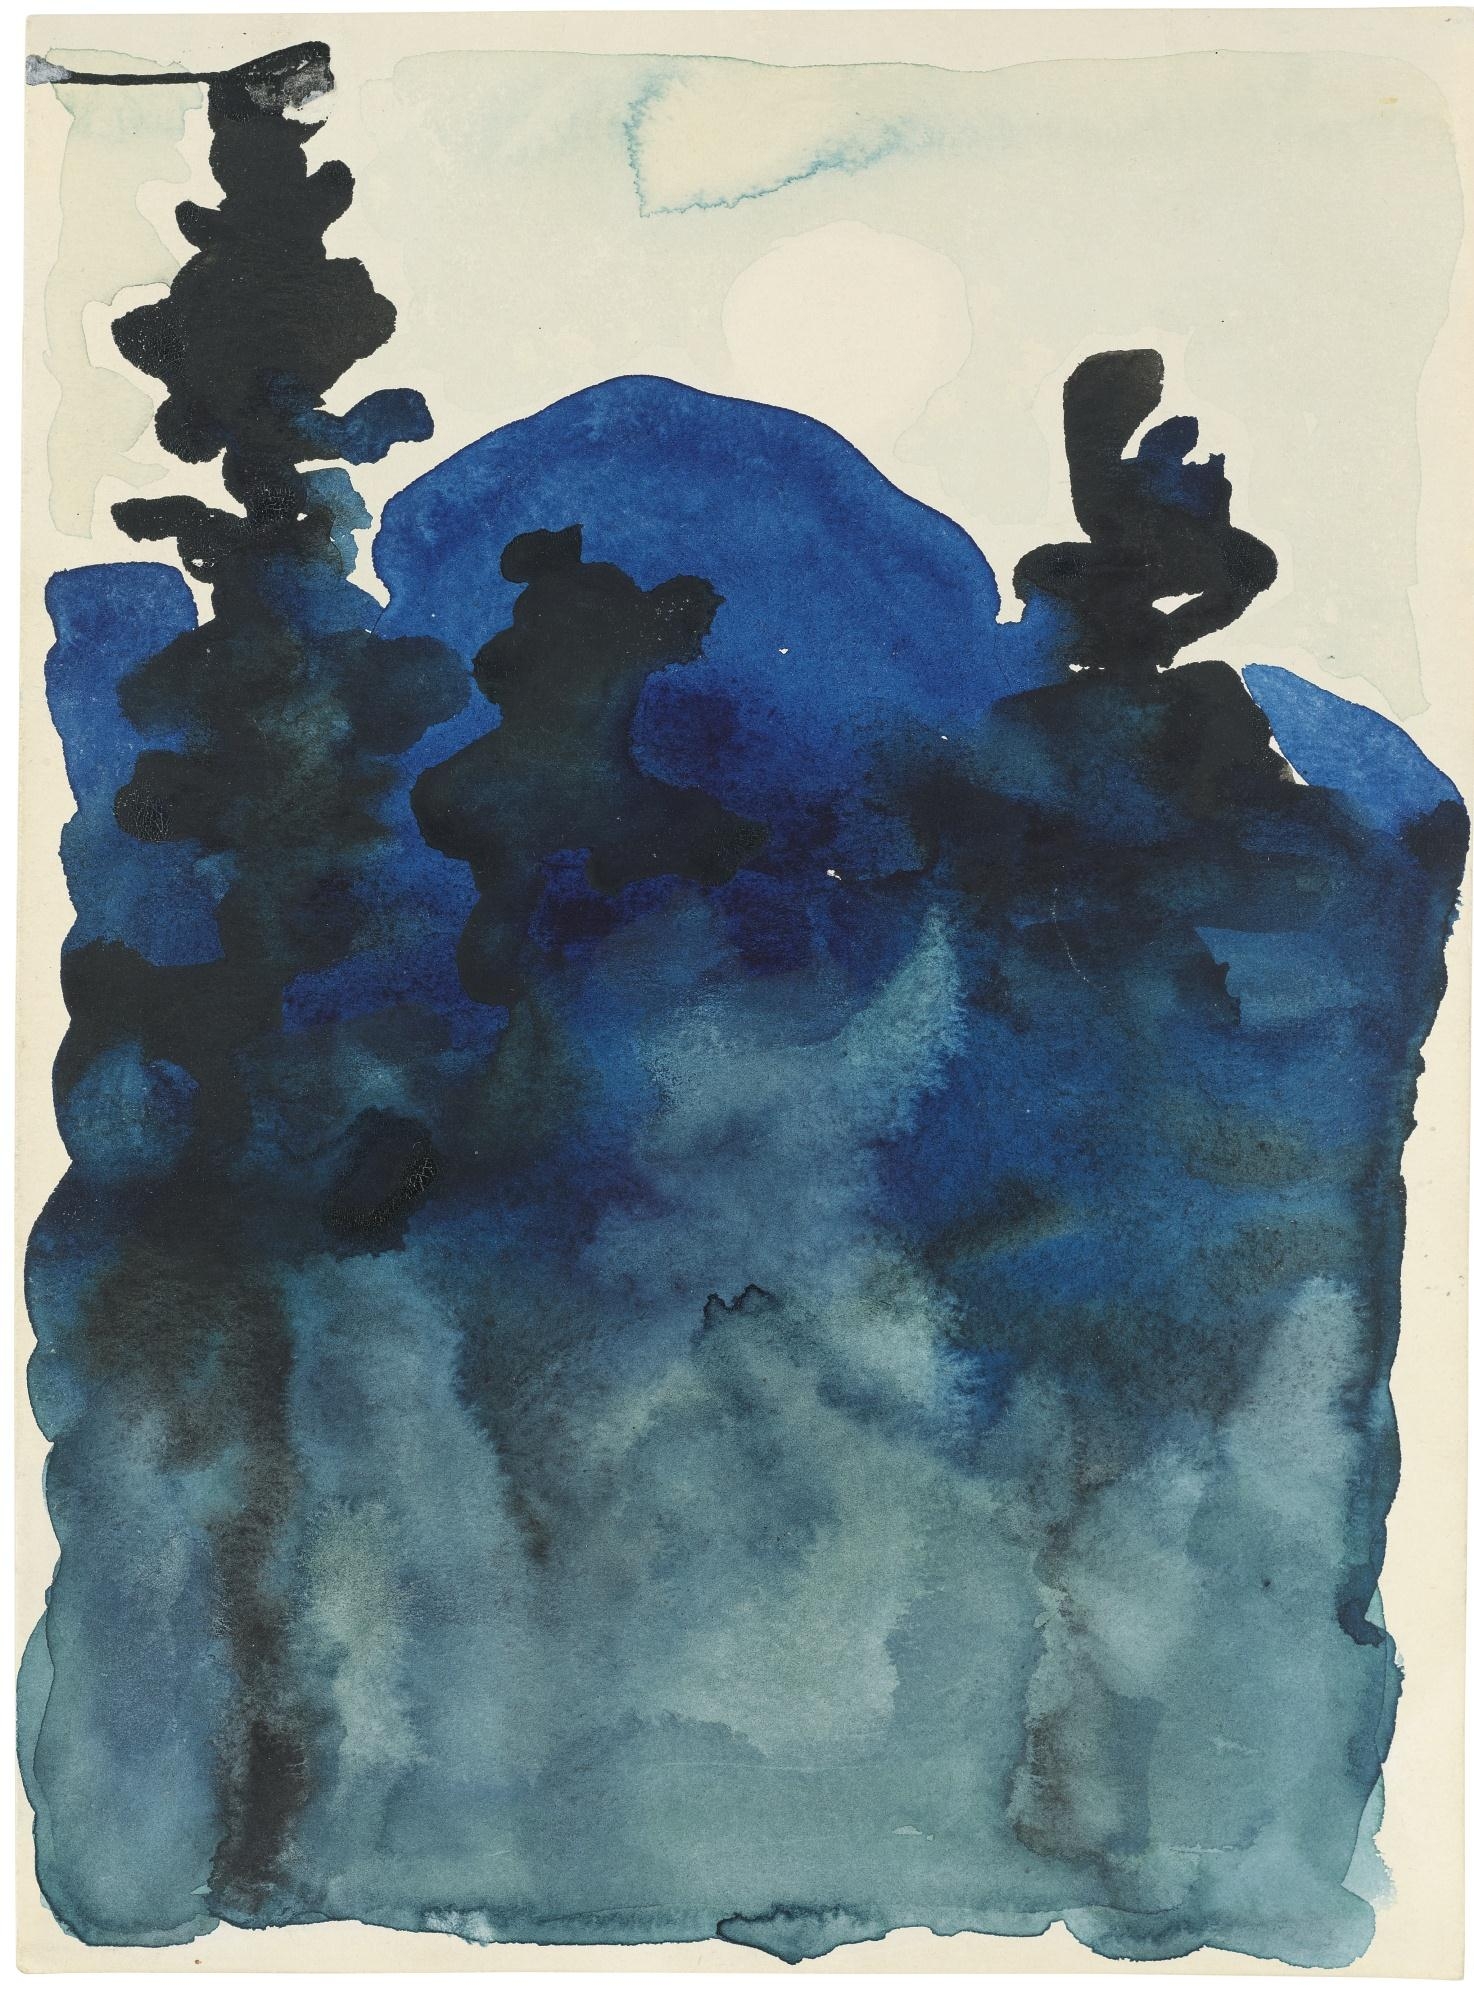 BLUE HILLS NO. III by Georgia O'Keeffe, 1916